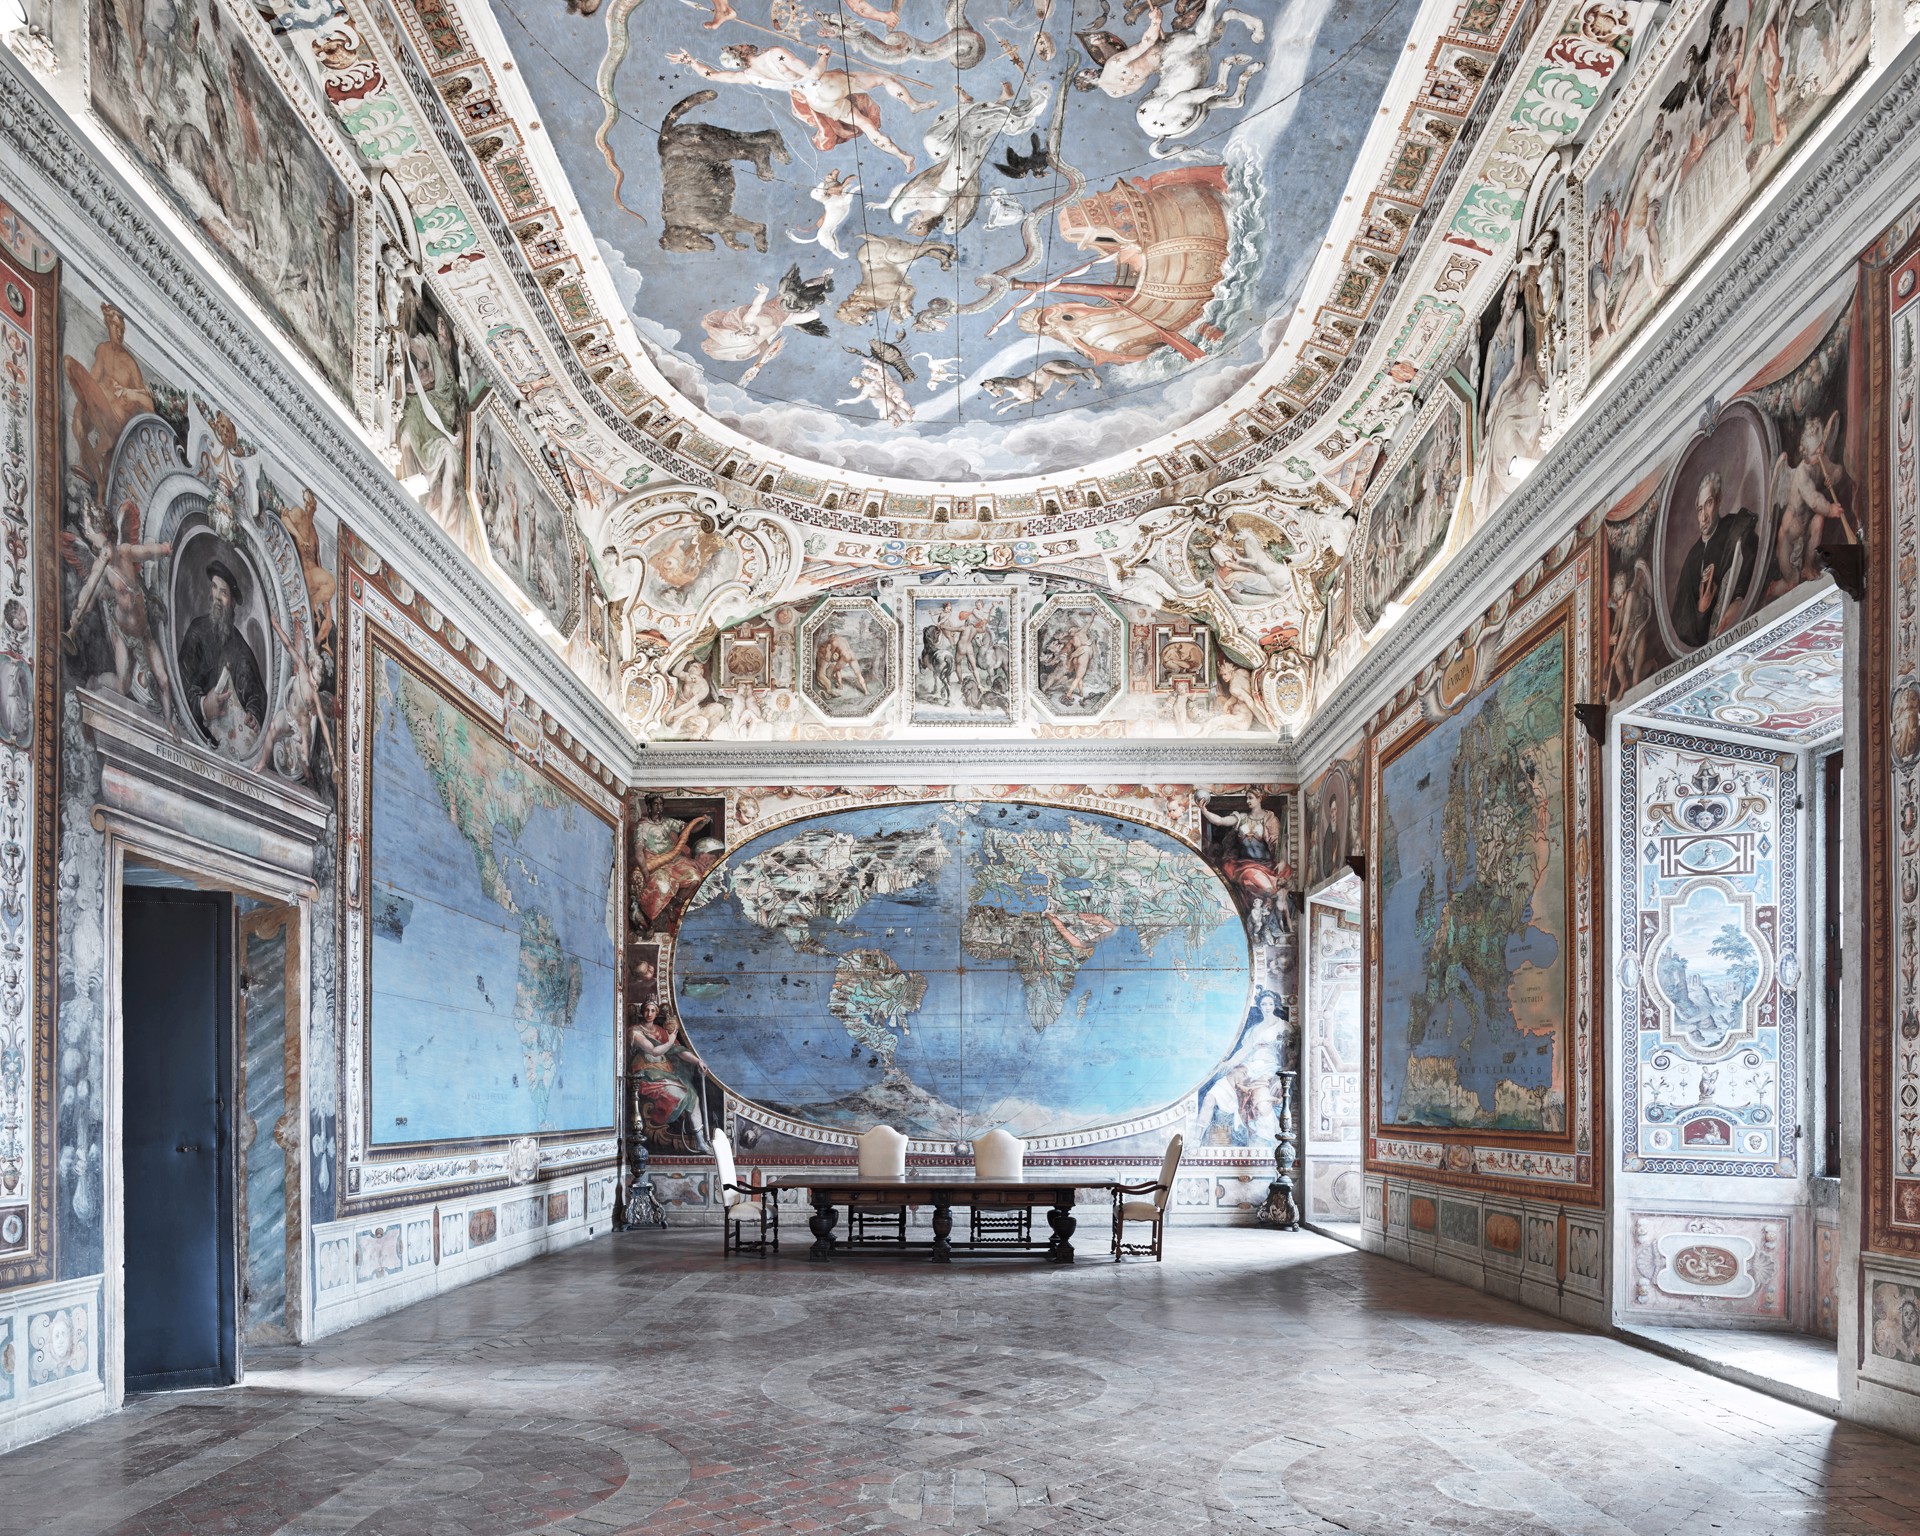 Map Room, Caprarola, Italy by David Burdeny